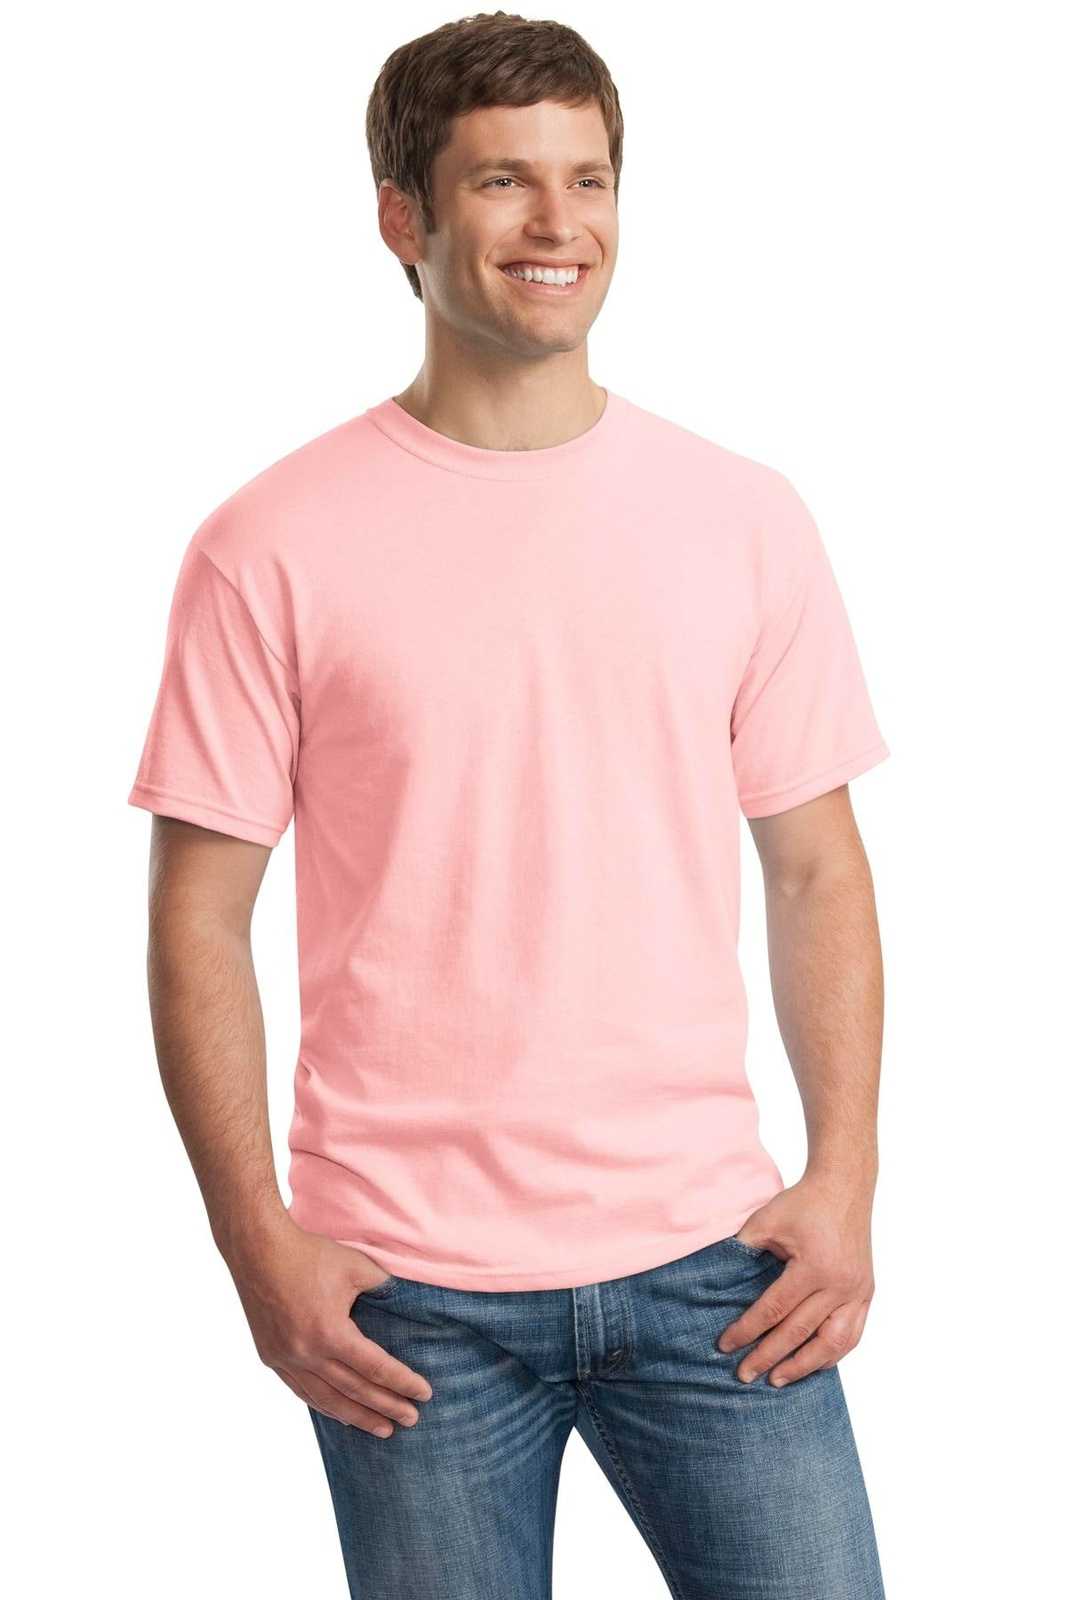 Gildan 5000 Heavy Cotton 100% Cotton T-Shirt - Light Pink - HIT a Double